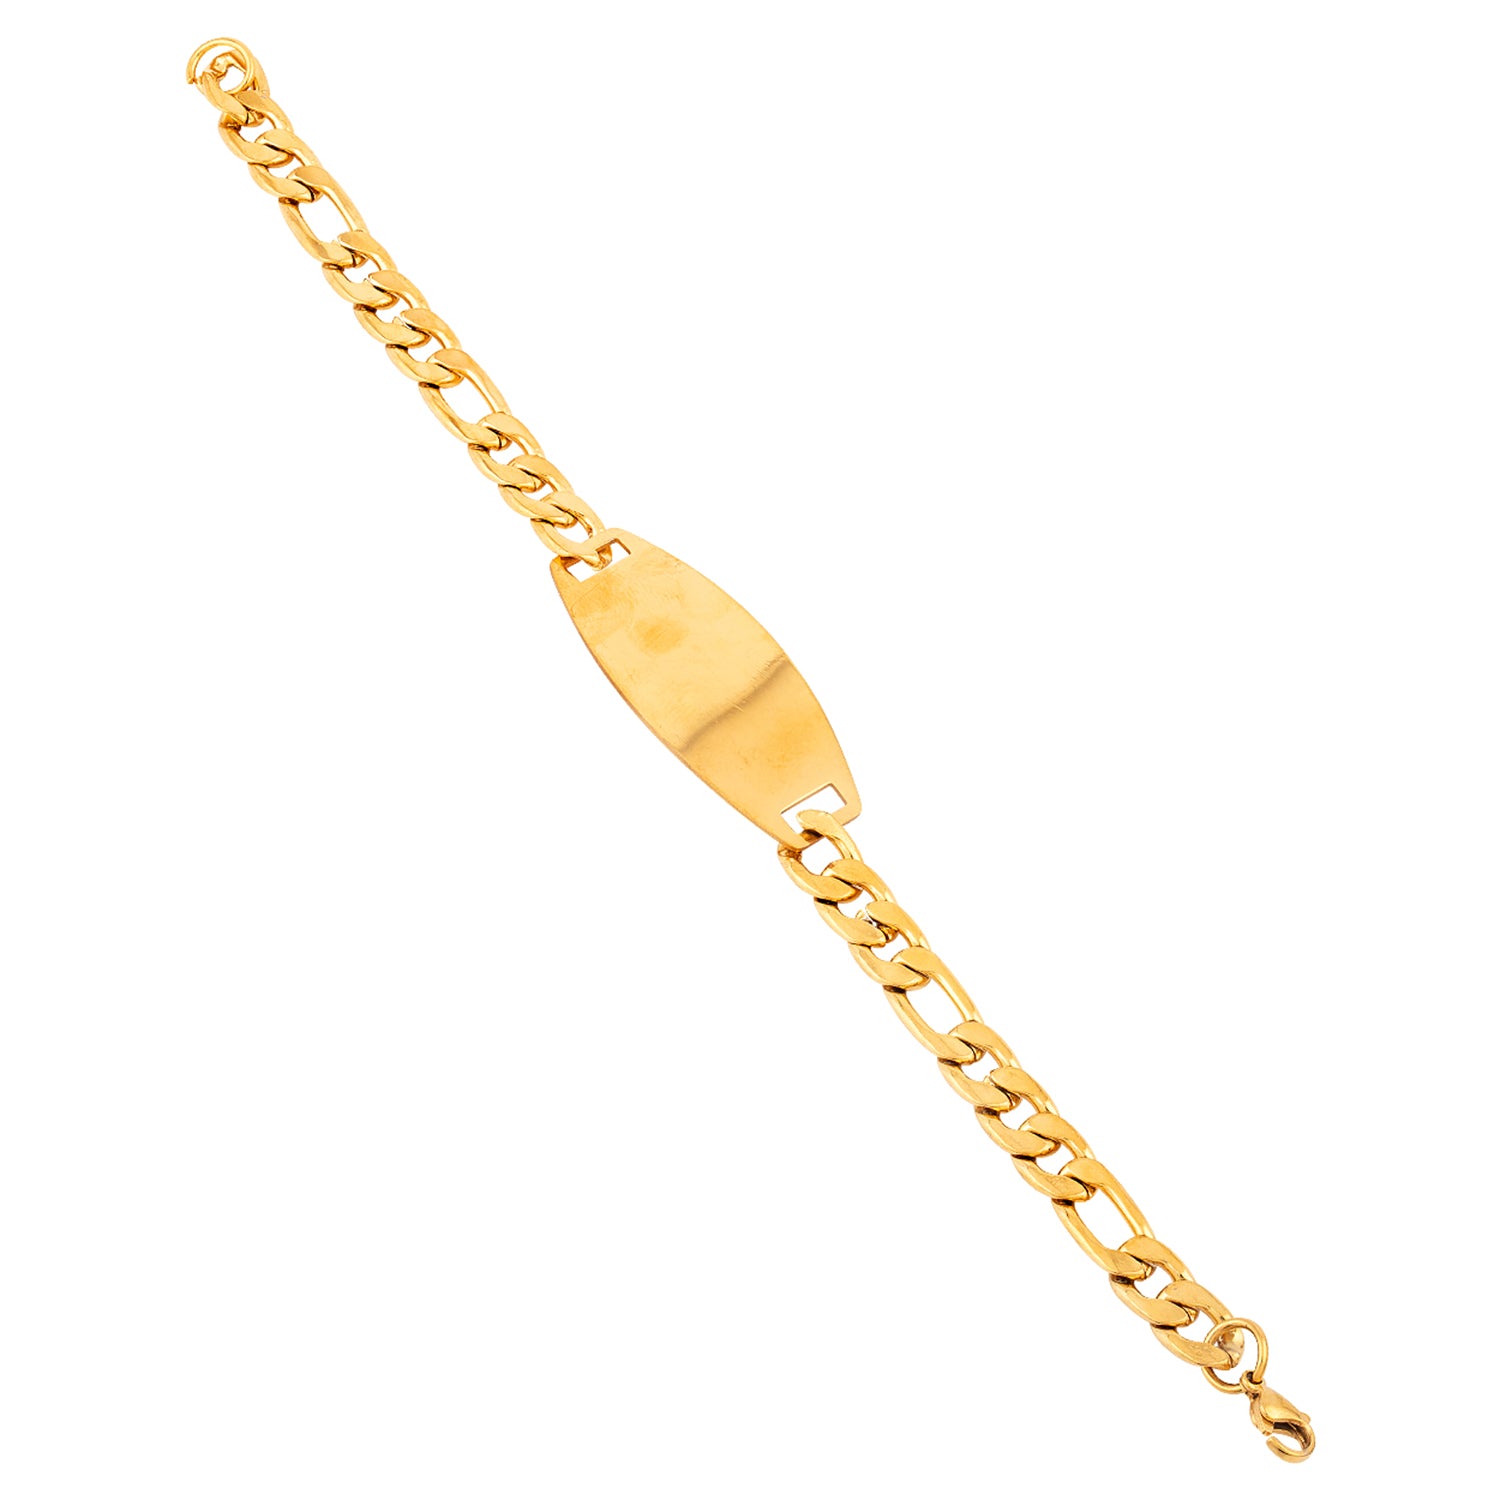 Royal Links Men's Chain Bracelet